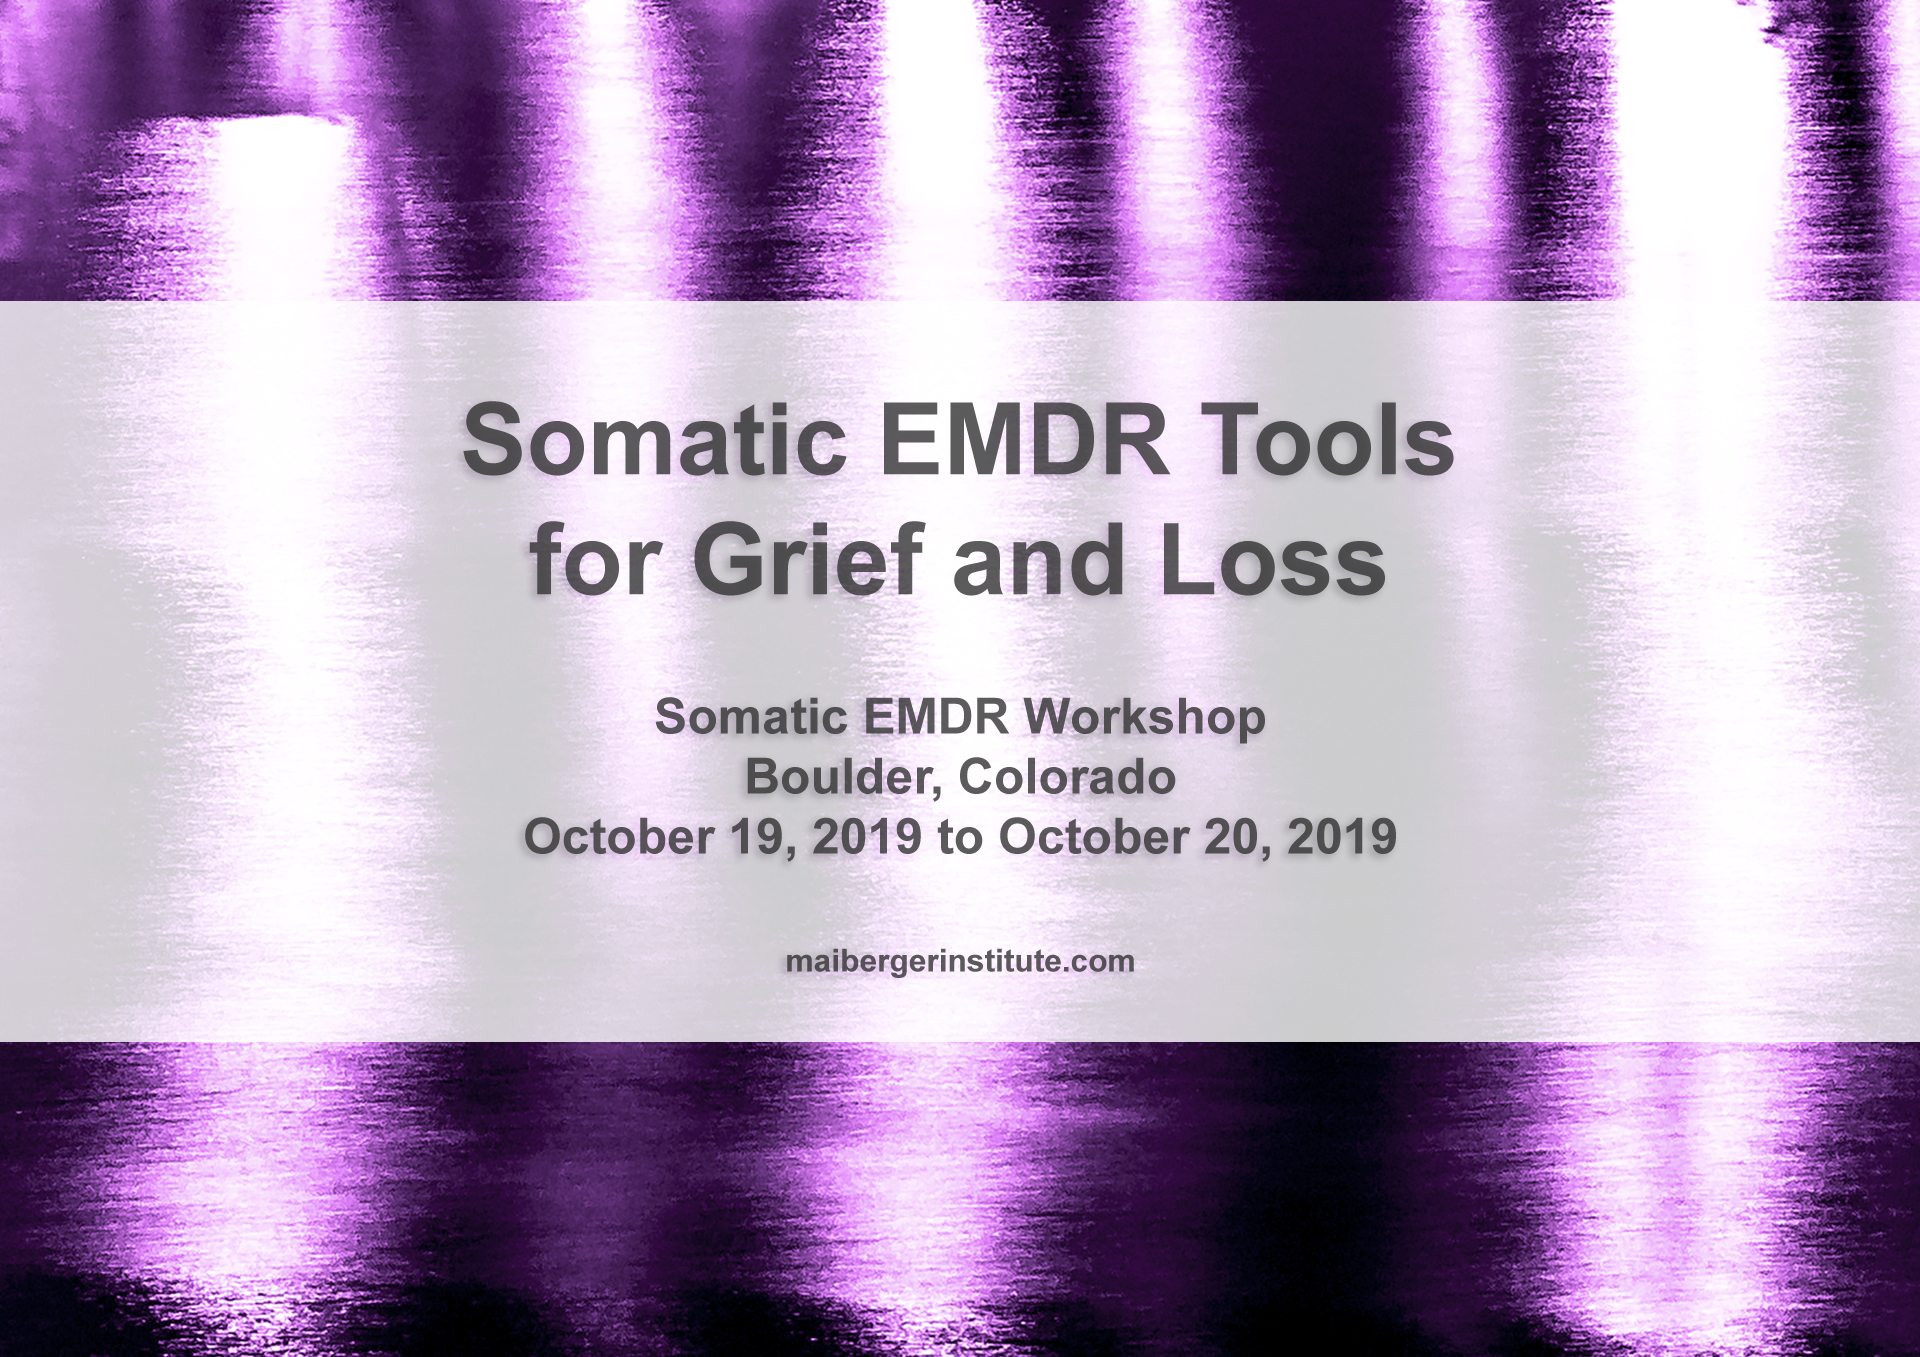 Somatic EMDR Tools for Grief and Loss - Somatic EMDR Workshop in Boulder, Colorado - October 19-20, 2019